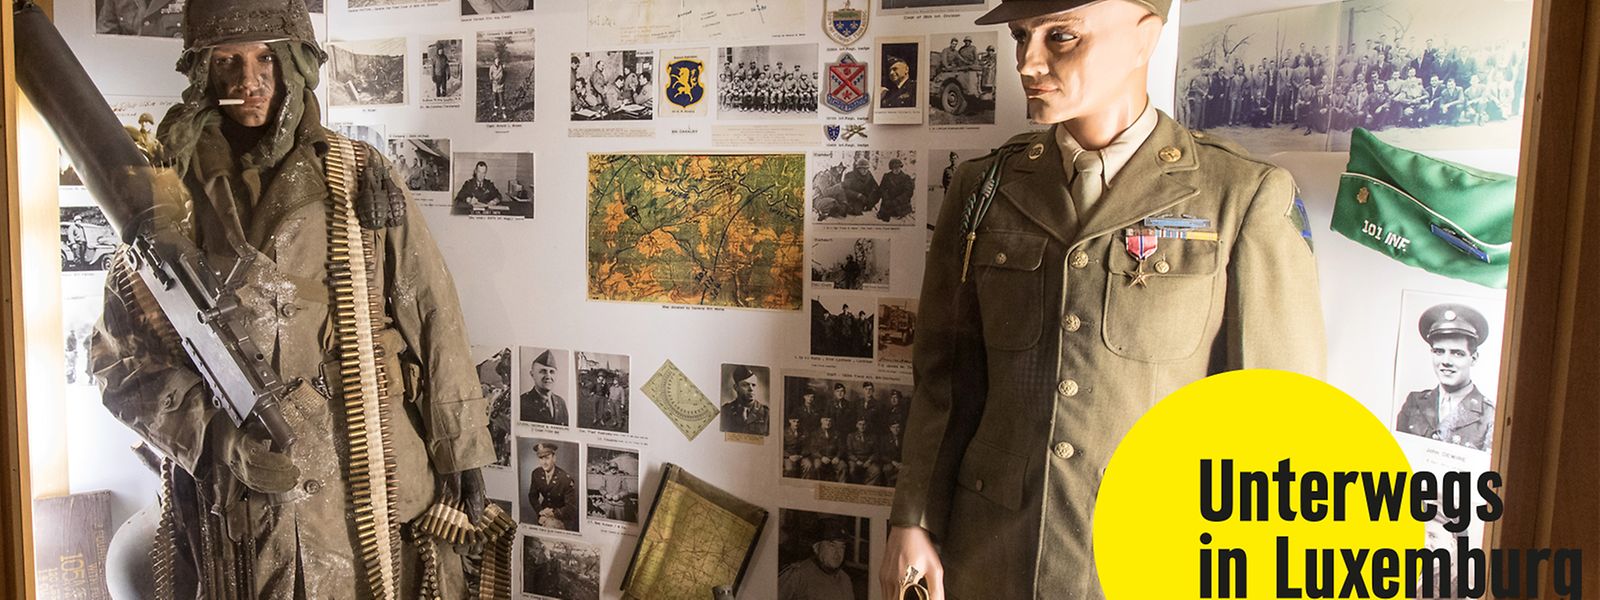 Im Militärmuseum wird Geschichte gelebt und erlebt.